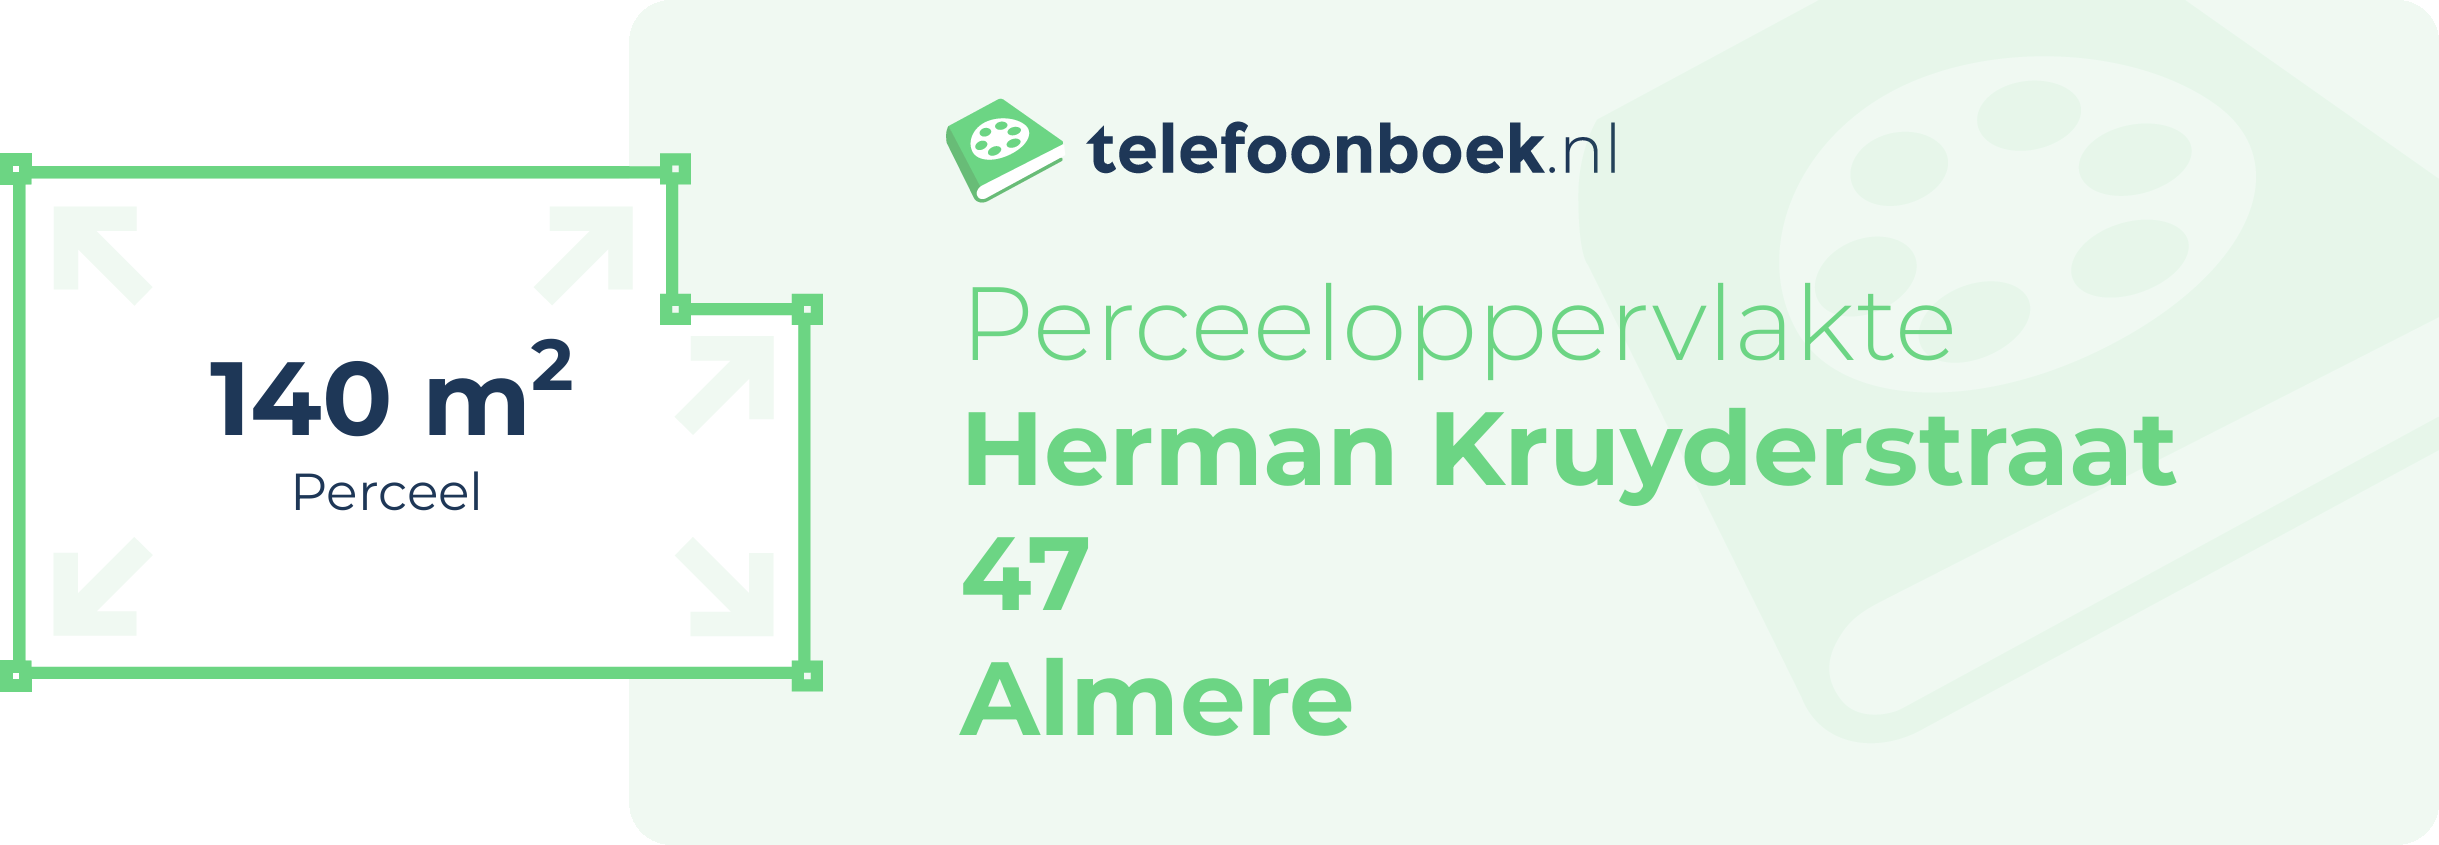 Perceeloppervlakte Herman Kruyderstraat 47 Almere